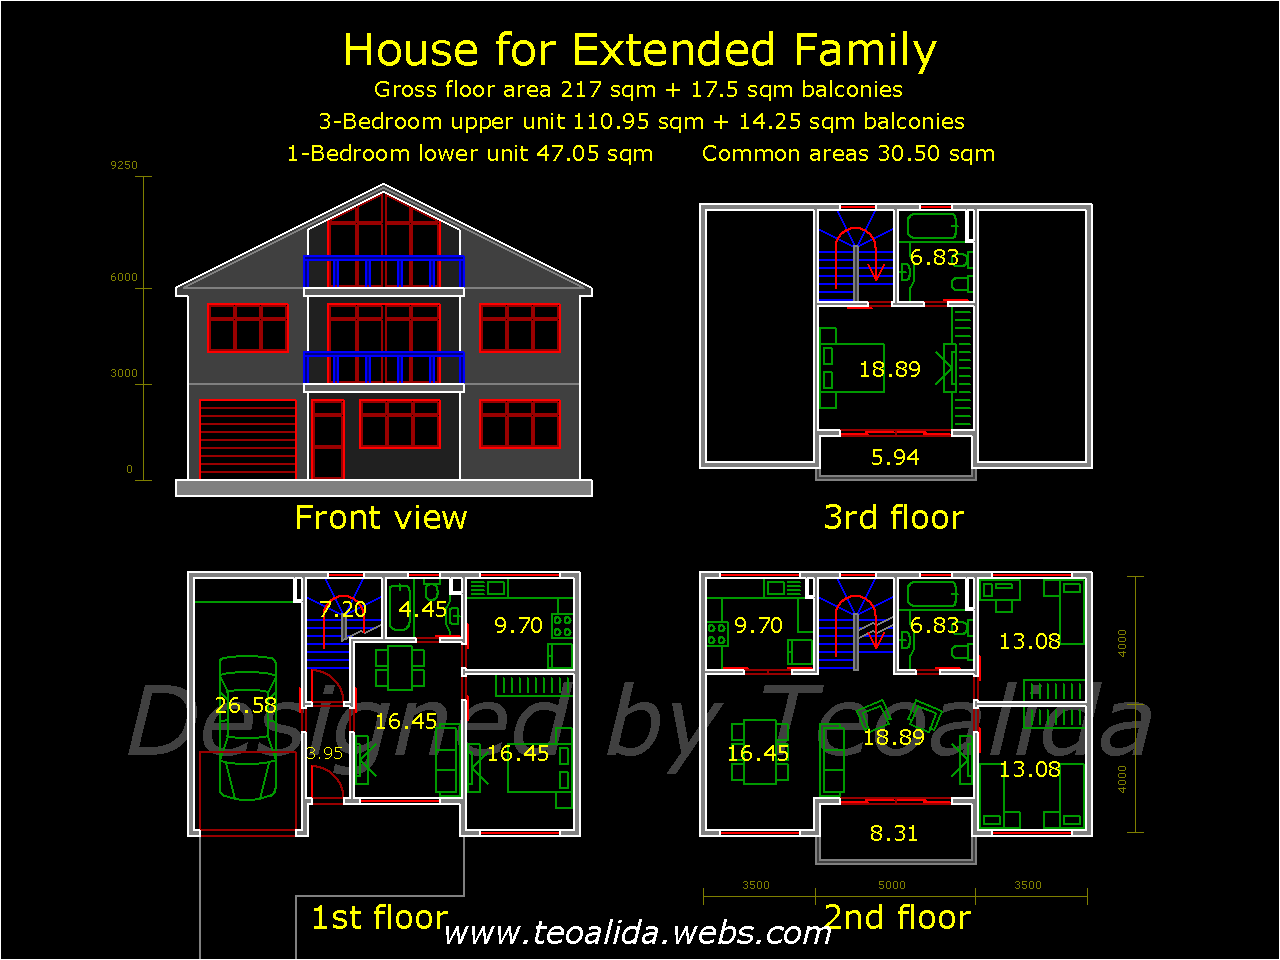 House for extended family floorplan